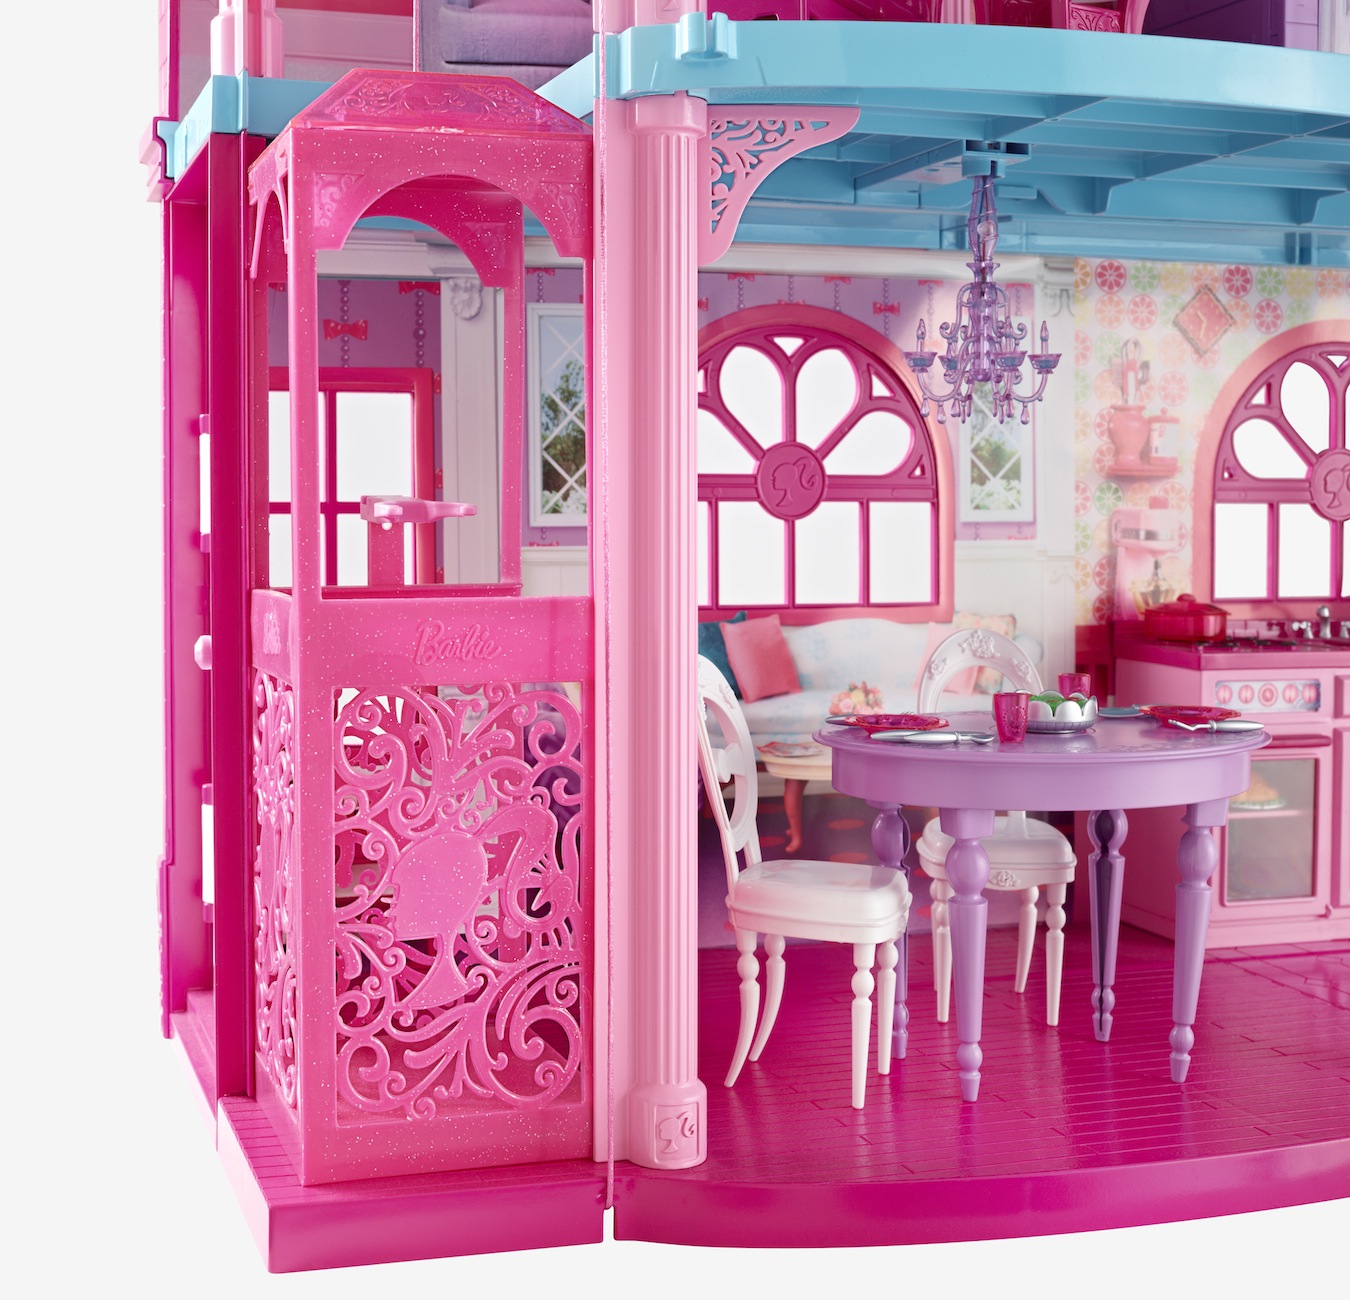 Барби дом взломка. Барби Дрим Хаус. Дом Барби Дрим Хаус. Dreamhouse Barbie Малибу. Barbie’s Malibu Dreamhouse.